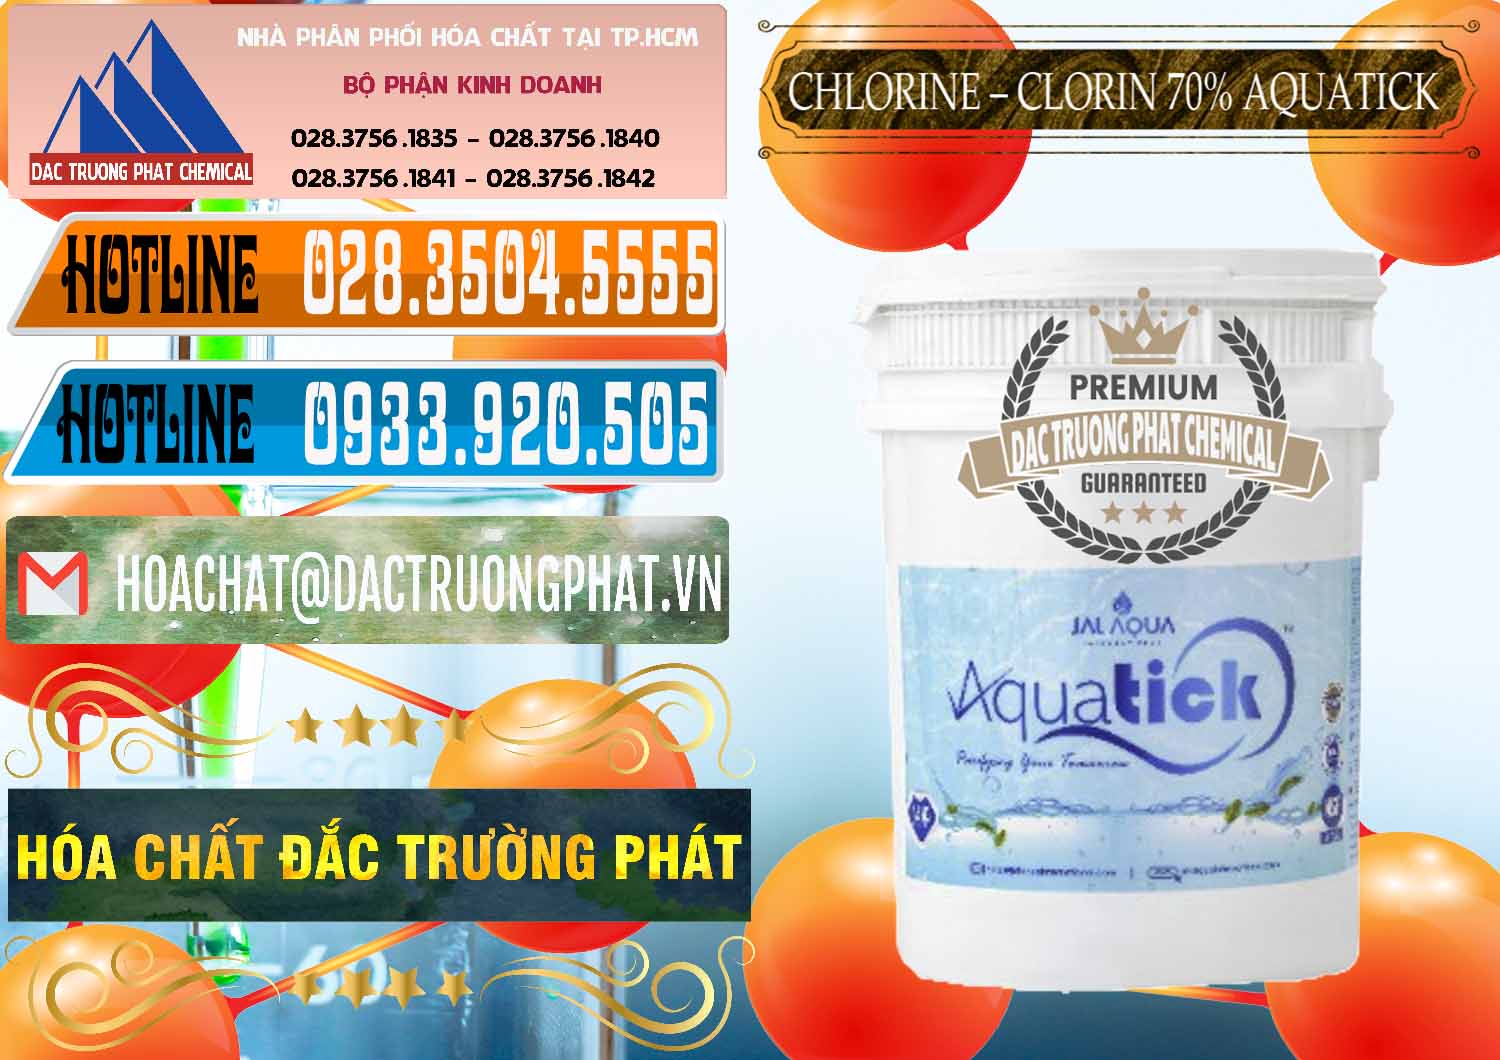 Đơn vị bán _ cung cấp Chlorine – Clorin 70% Aquatick Thùng Cao Jal Aqua Ấn Độ India - 0237 - Công ty chuyên cung cấp ( nhập khẩu ) hóa chất tại TP.HCM - stmp.net